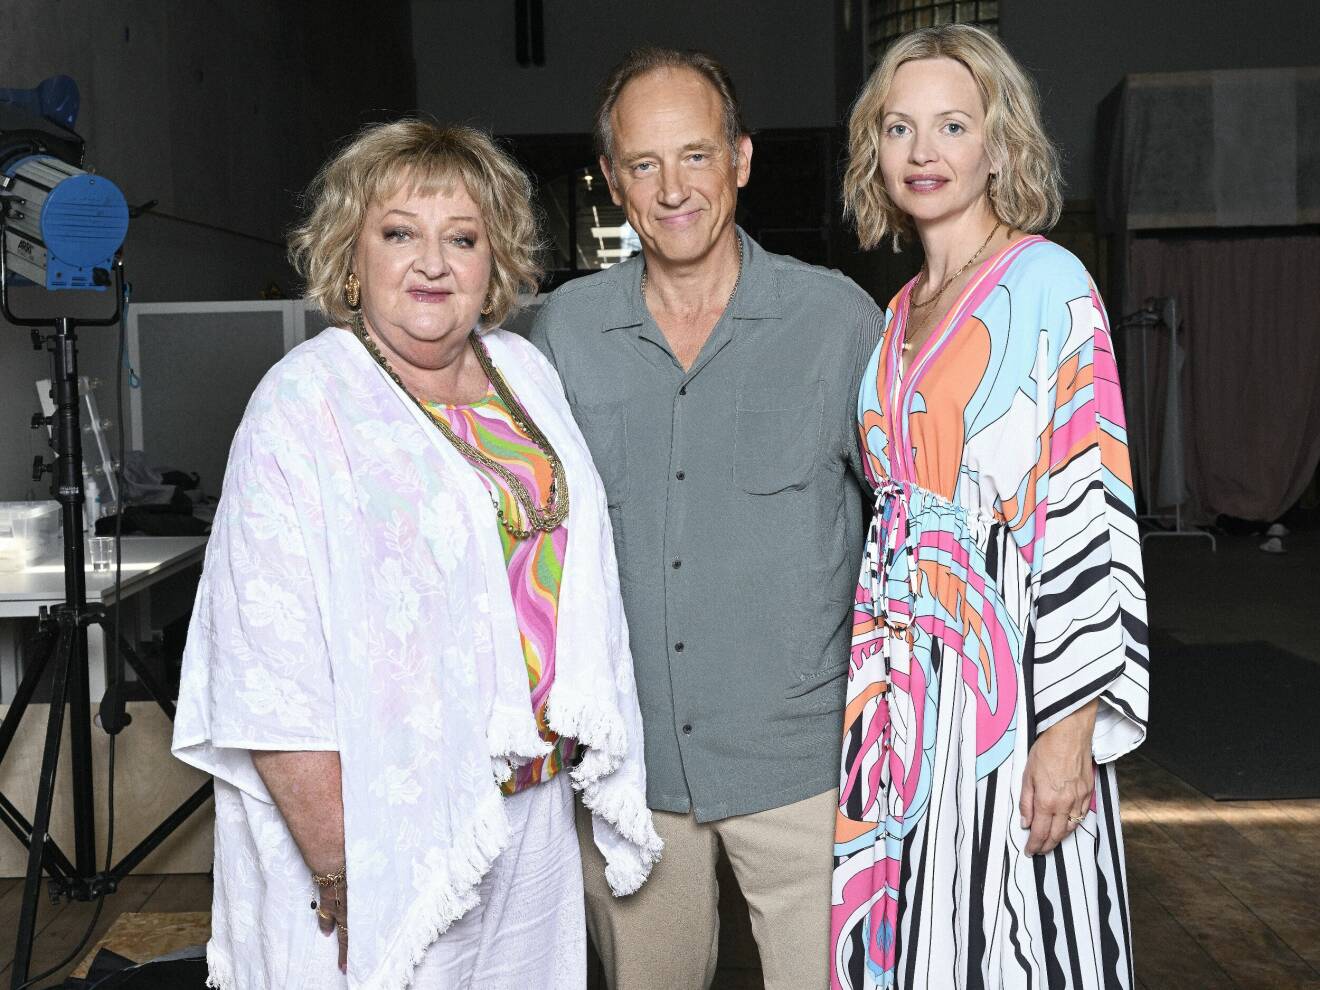 Samuel tillsammans med Marianne Mörck och Jenny Ulving som också spelar i Strandhotellet.